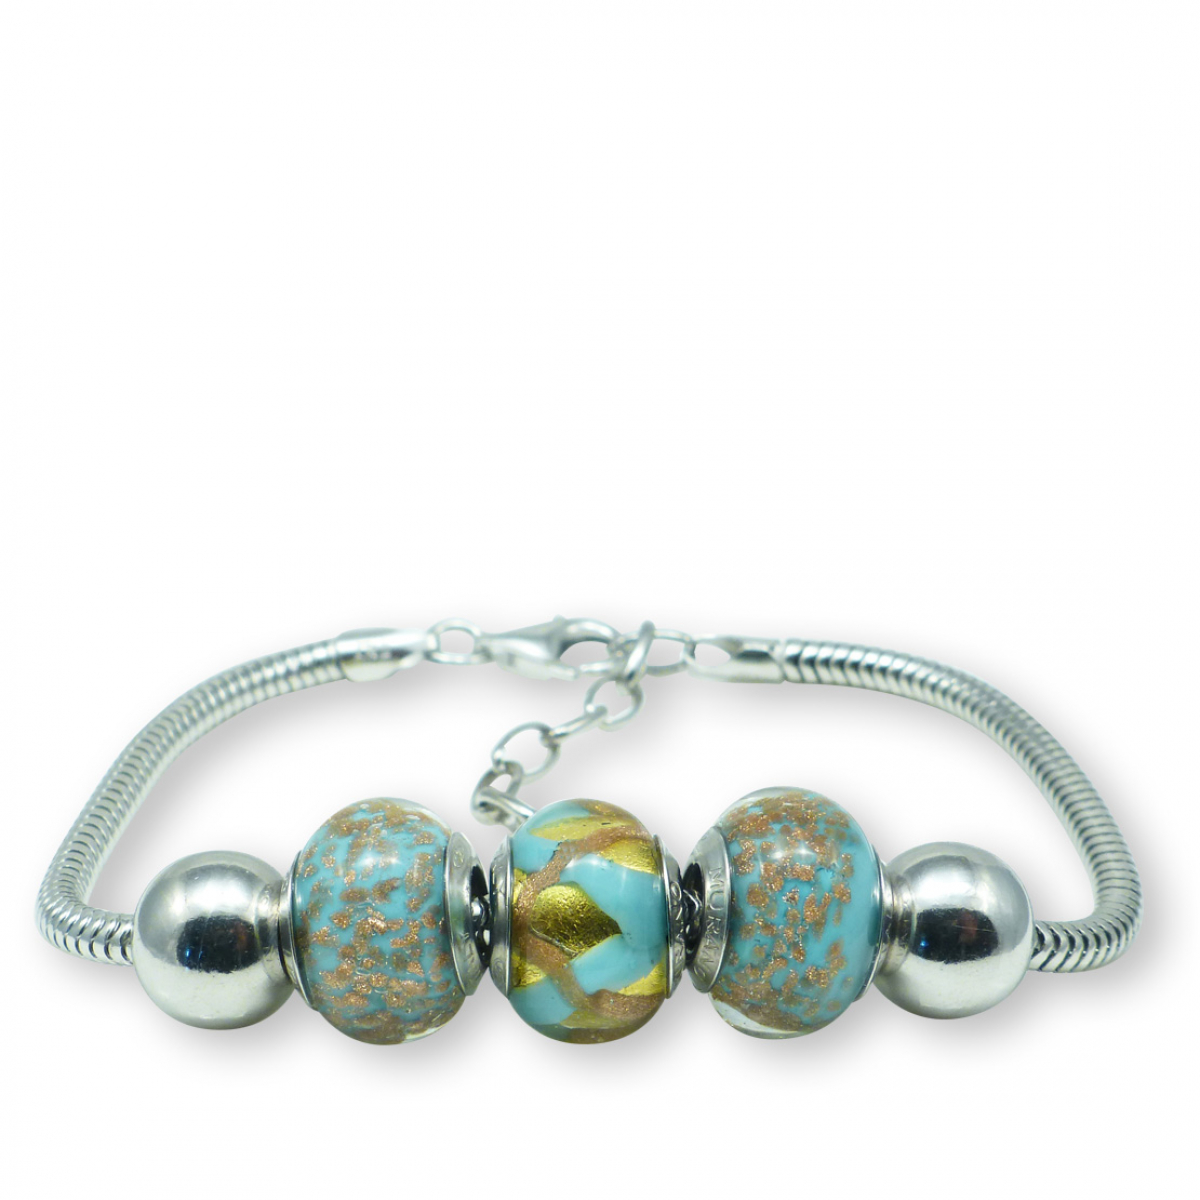 Murano glass Sterling silver charm bracelet – Trieste